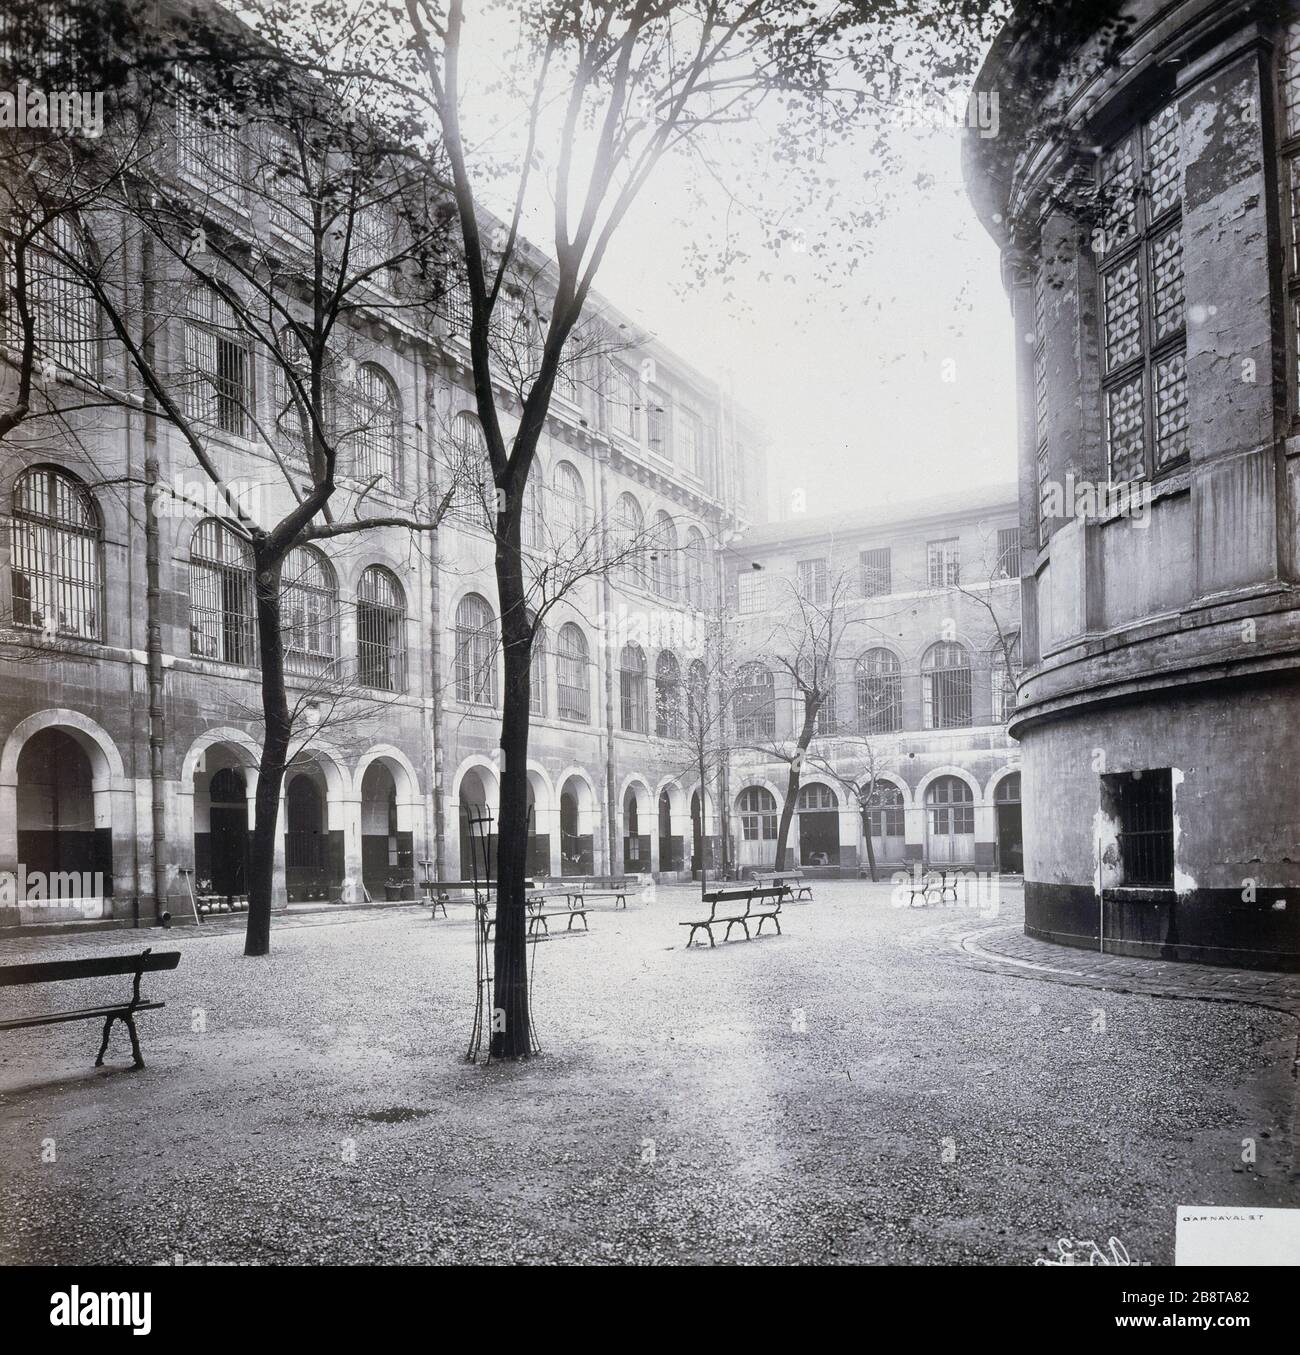 COURT OF HOSPITAL SAINT-LAZARE Sans titre : cour de l'hôpital Saint-Lazare. Paris (Xème arr.). Paris, musée Carnavalet. Stock Photo